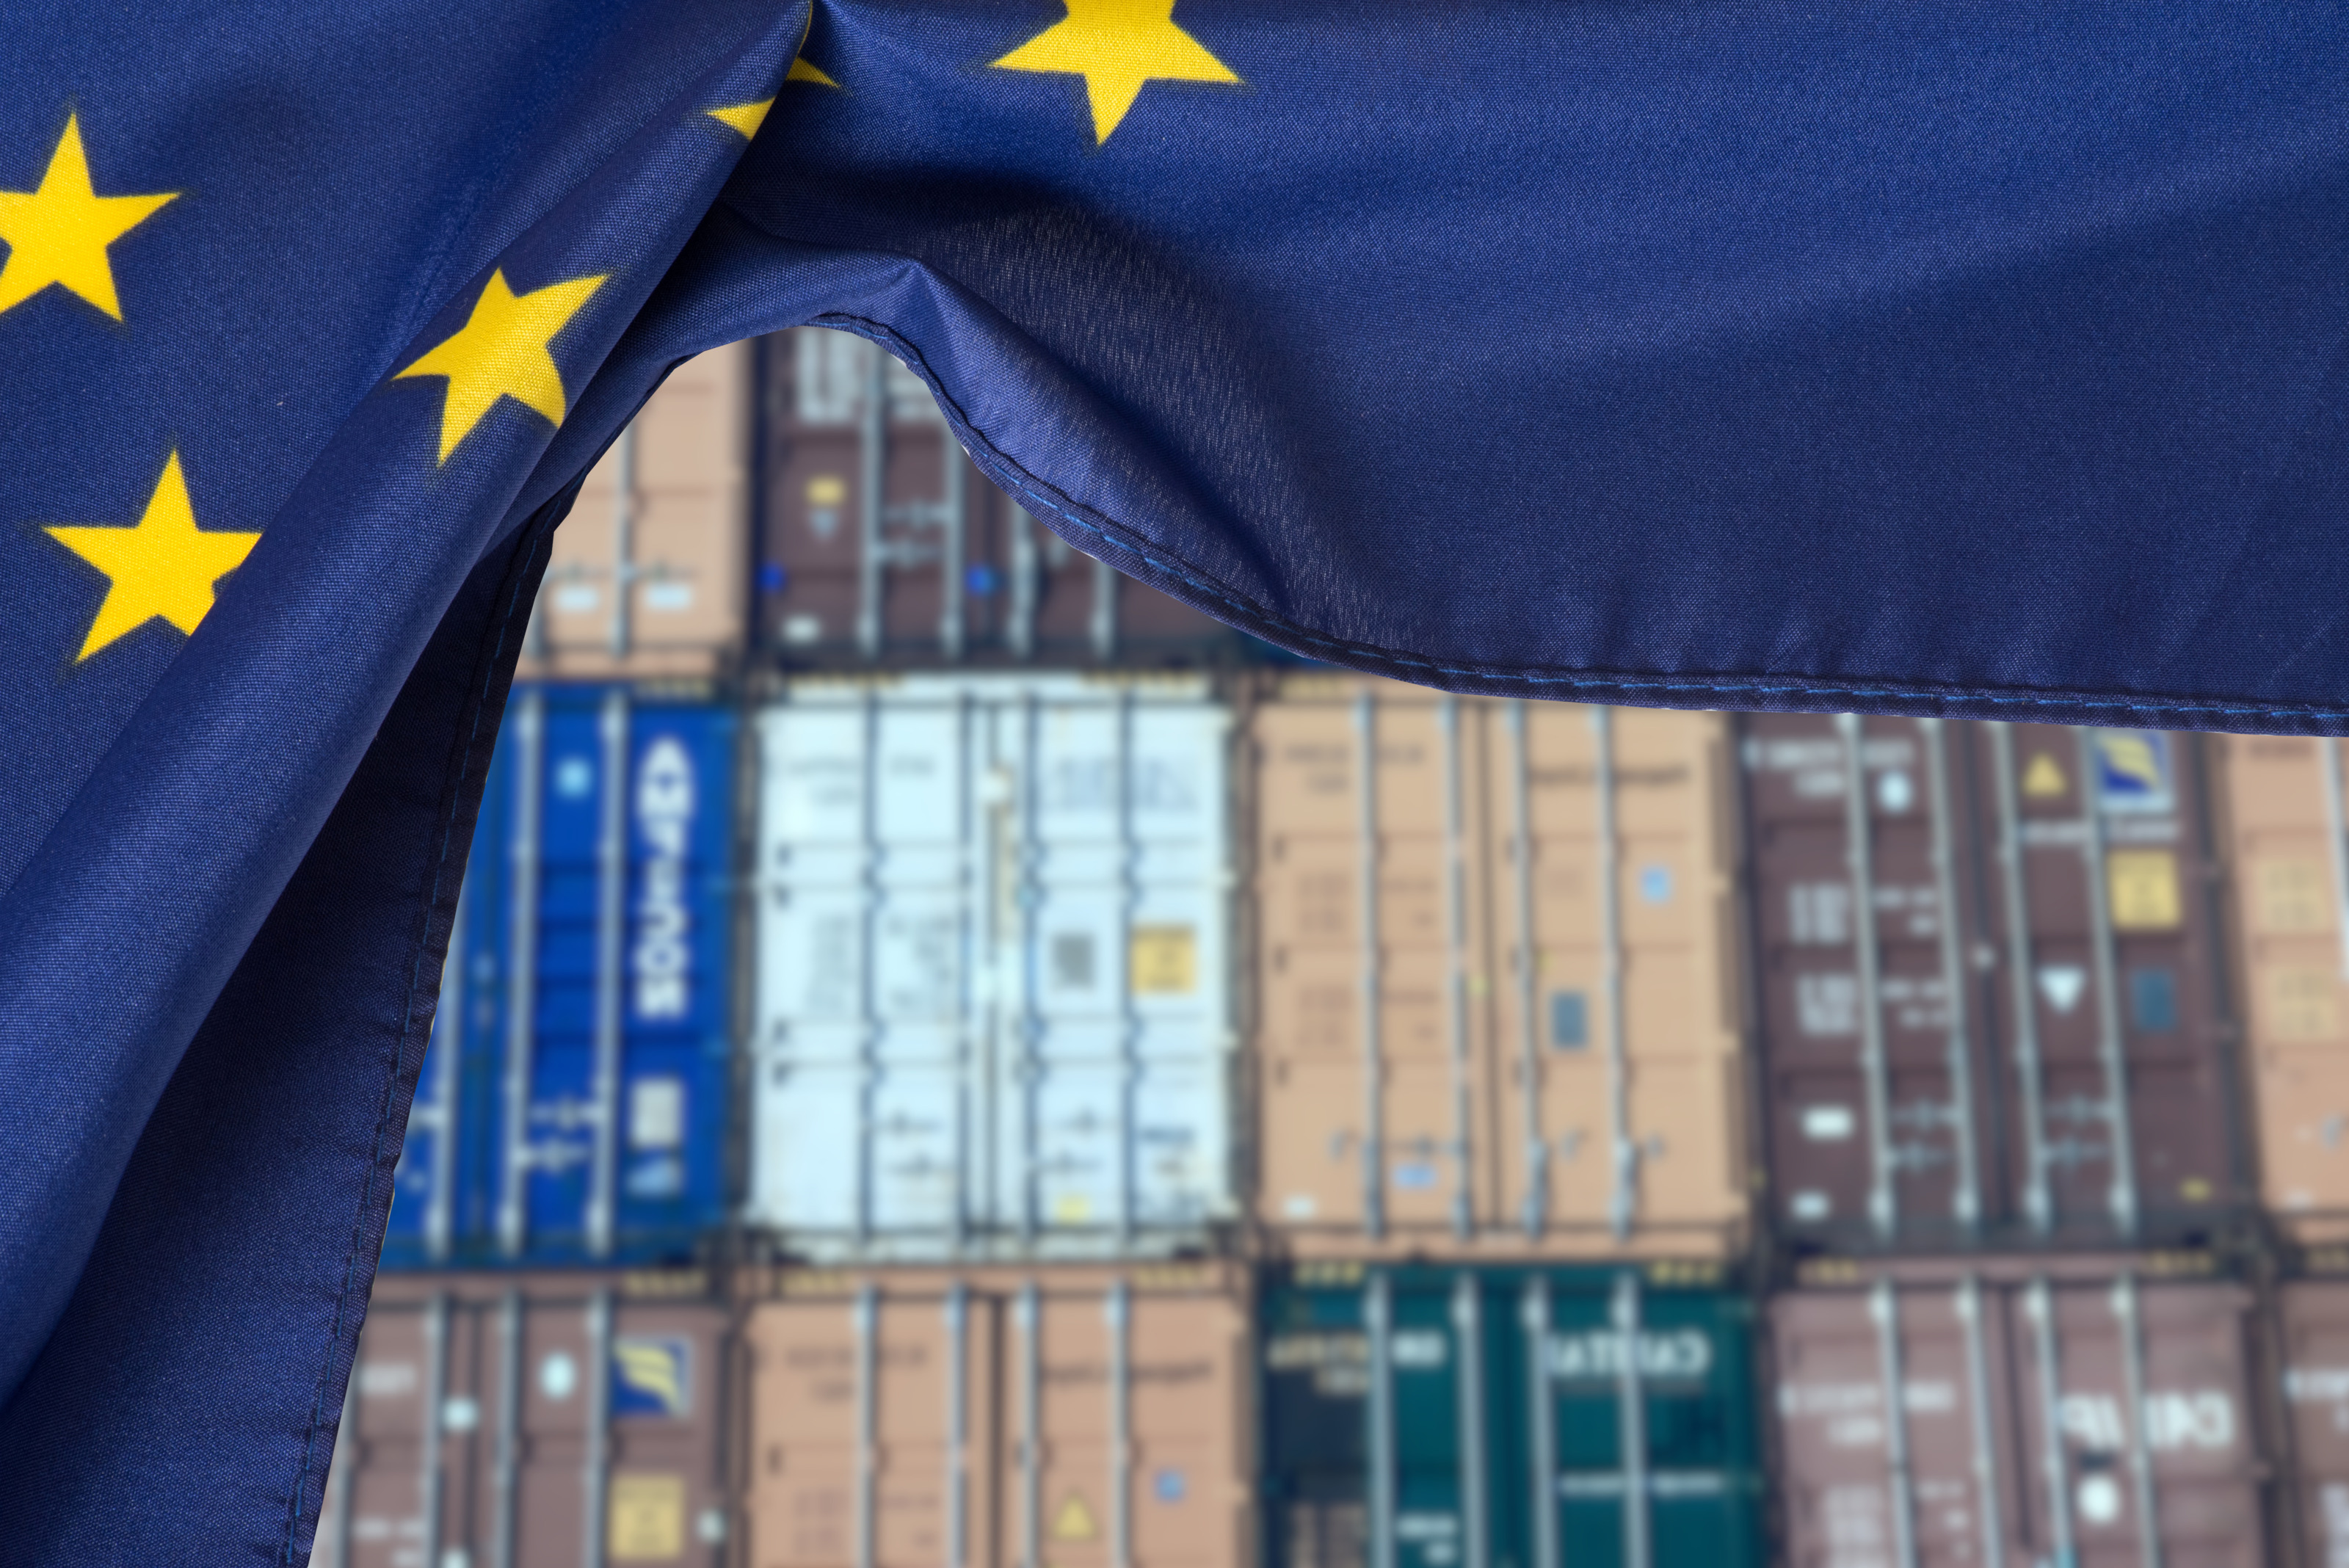 Ausschnitt der Europaflagge - blauer Stoff mit gelben Sternen - im Hintergrund verschwommen gestapelte Transportcontainer